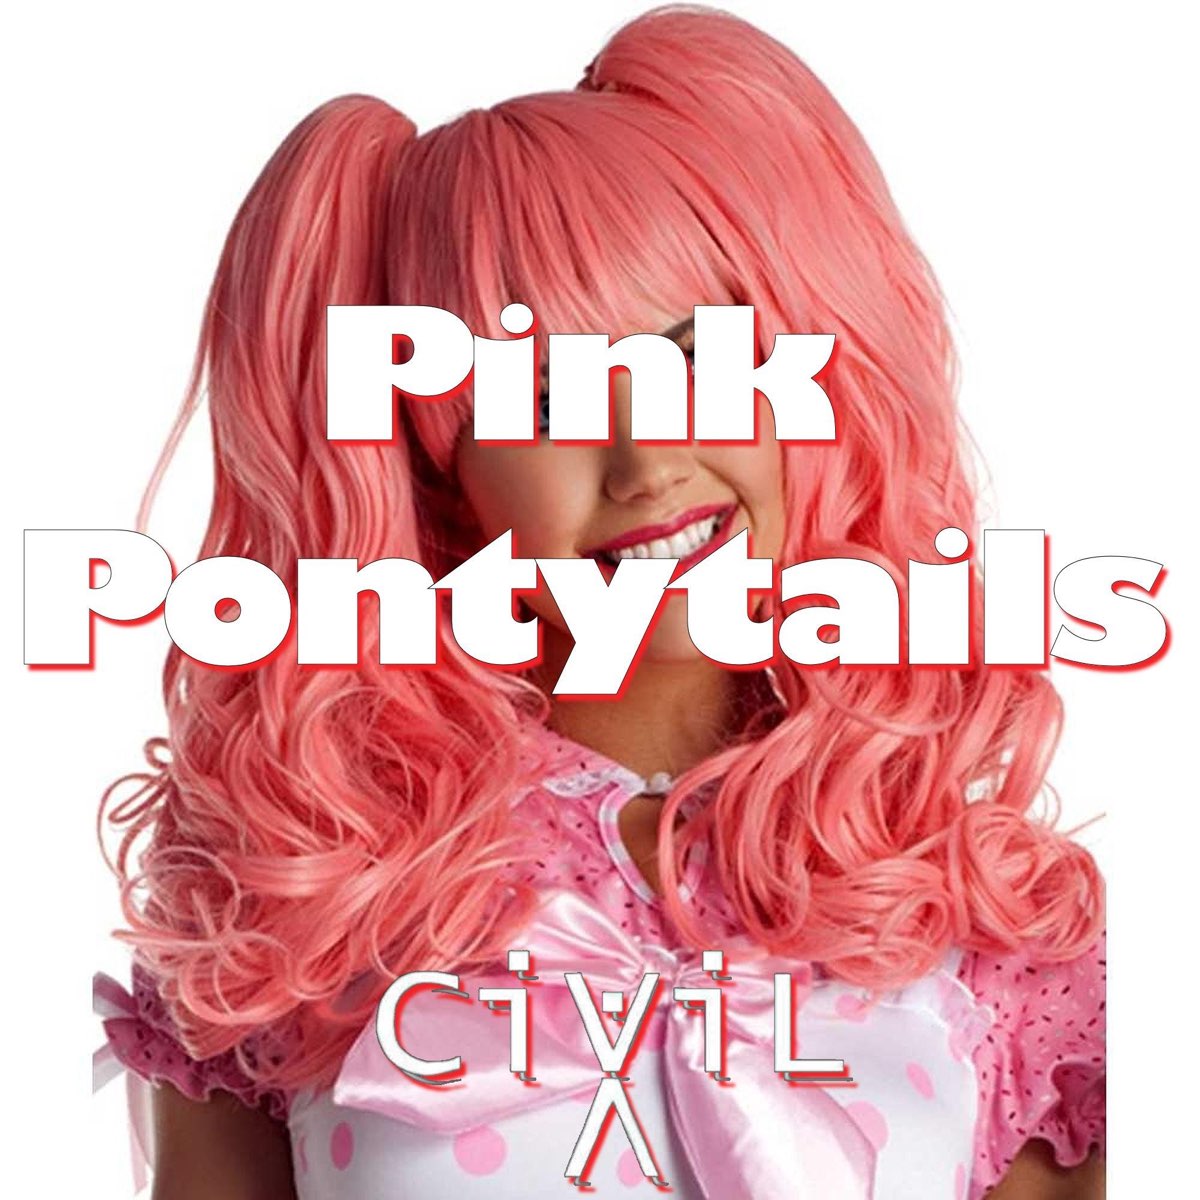 Сингл Пинк. Pink слушаю музыку. "Sinhour ponytails Pink". Born pink альбом